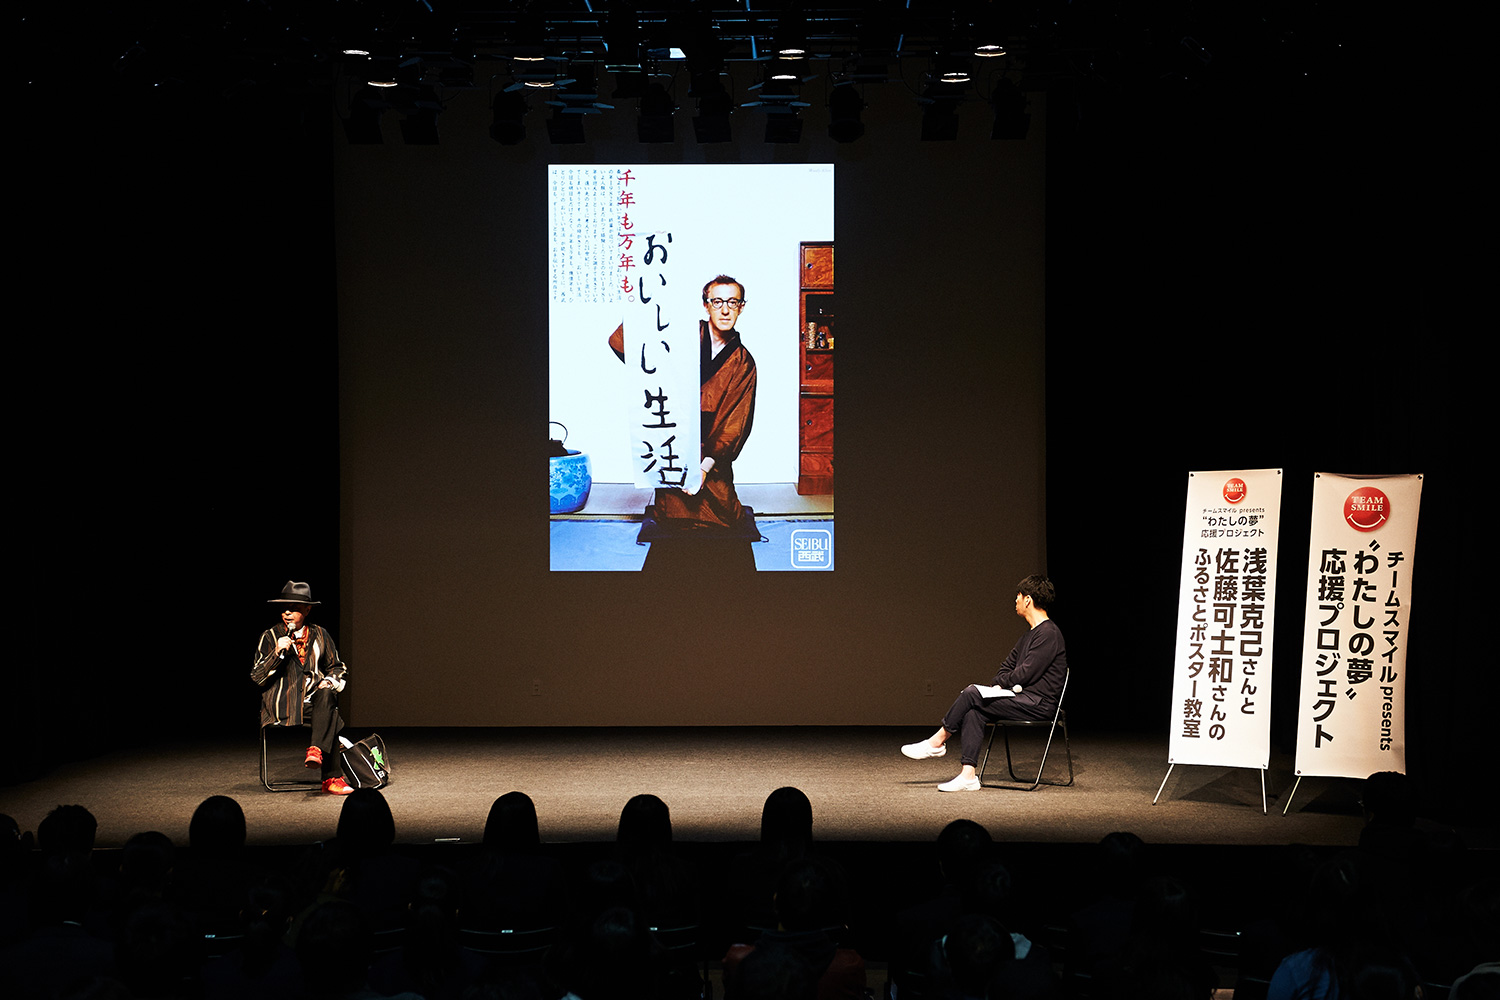 浅葉さんがアートディレクションを手掛けた、有名な『西武』のポスター。中央に映るのは映画監督のウディ・アレン